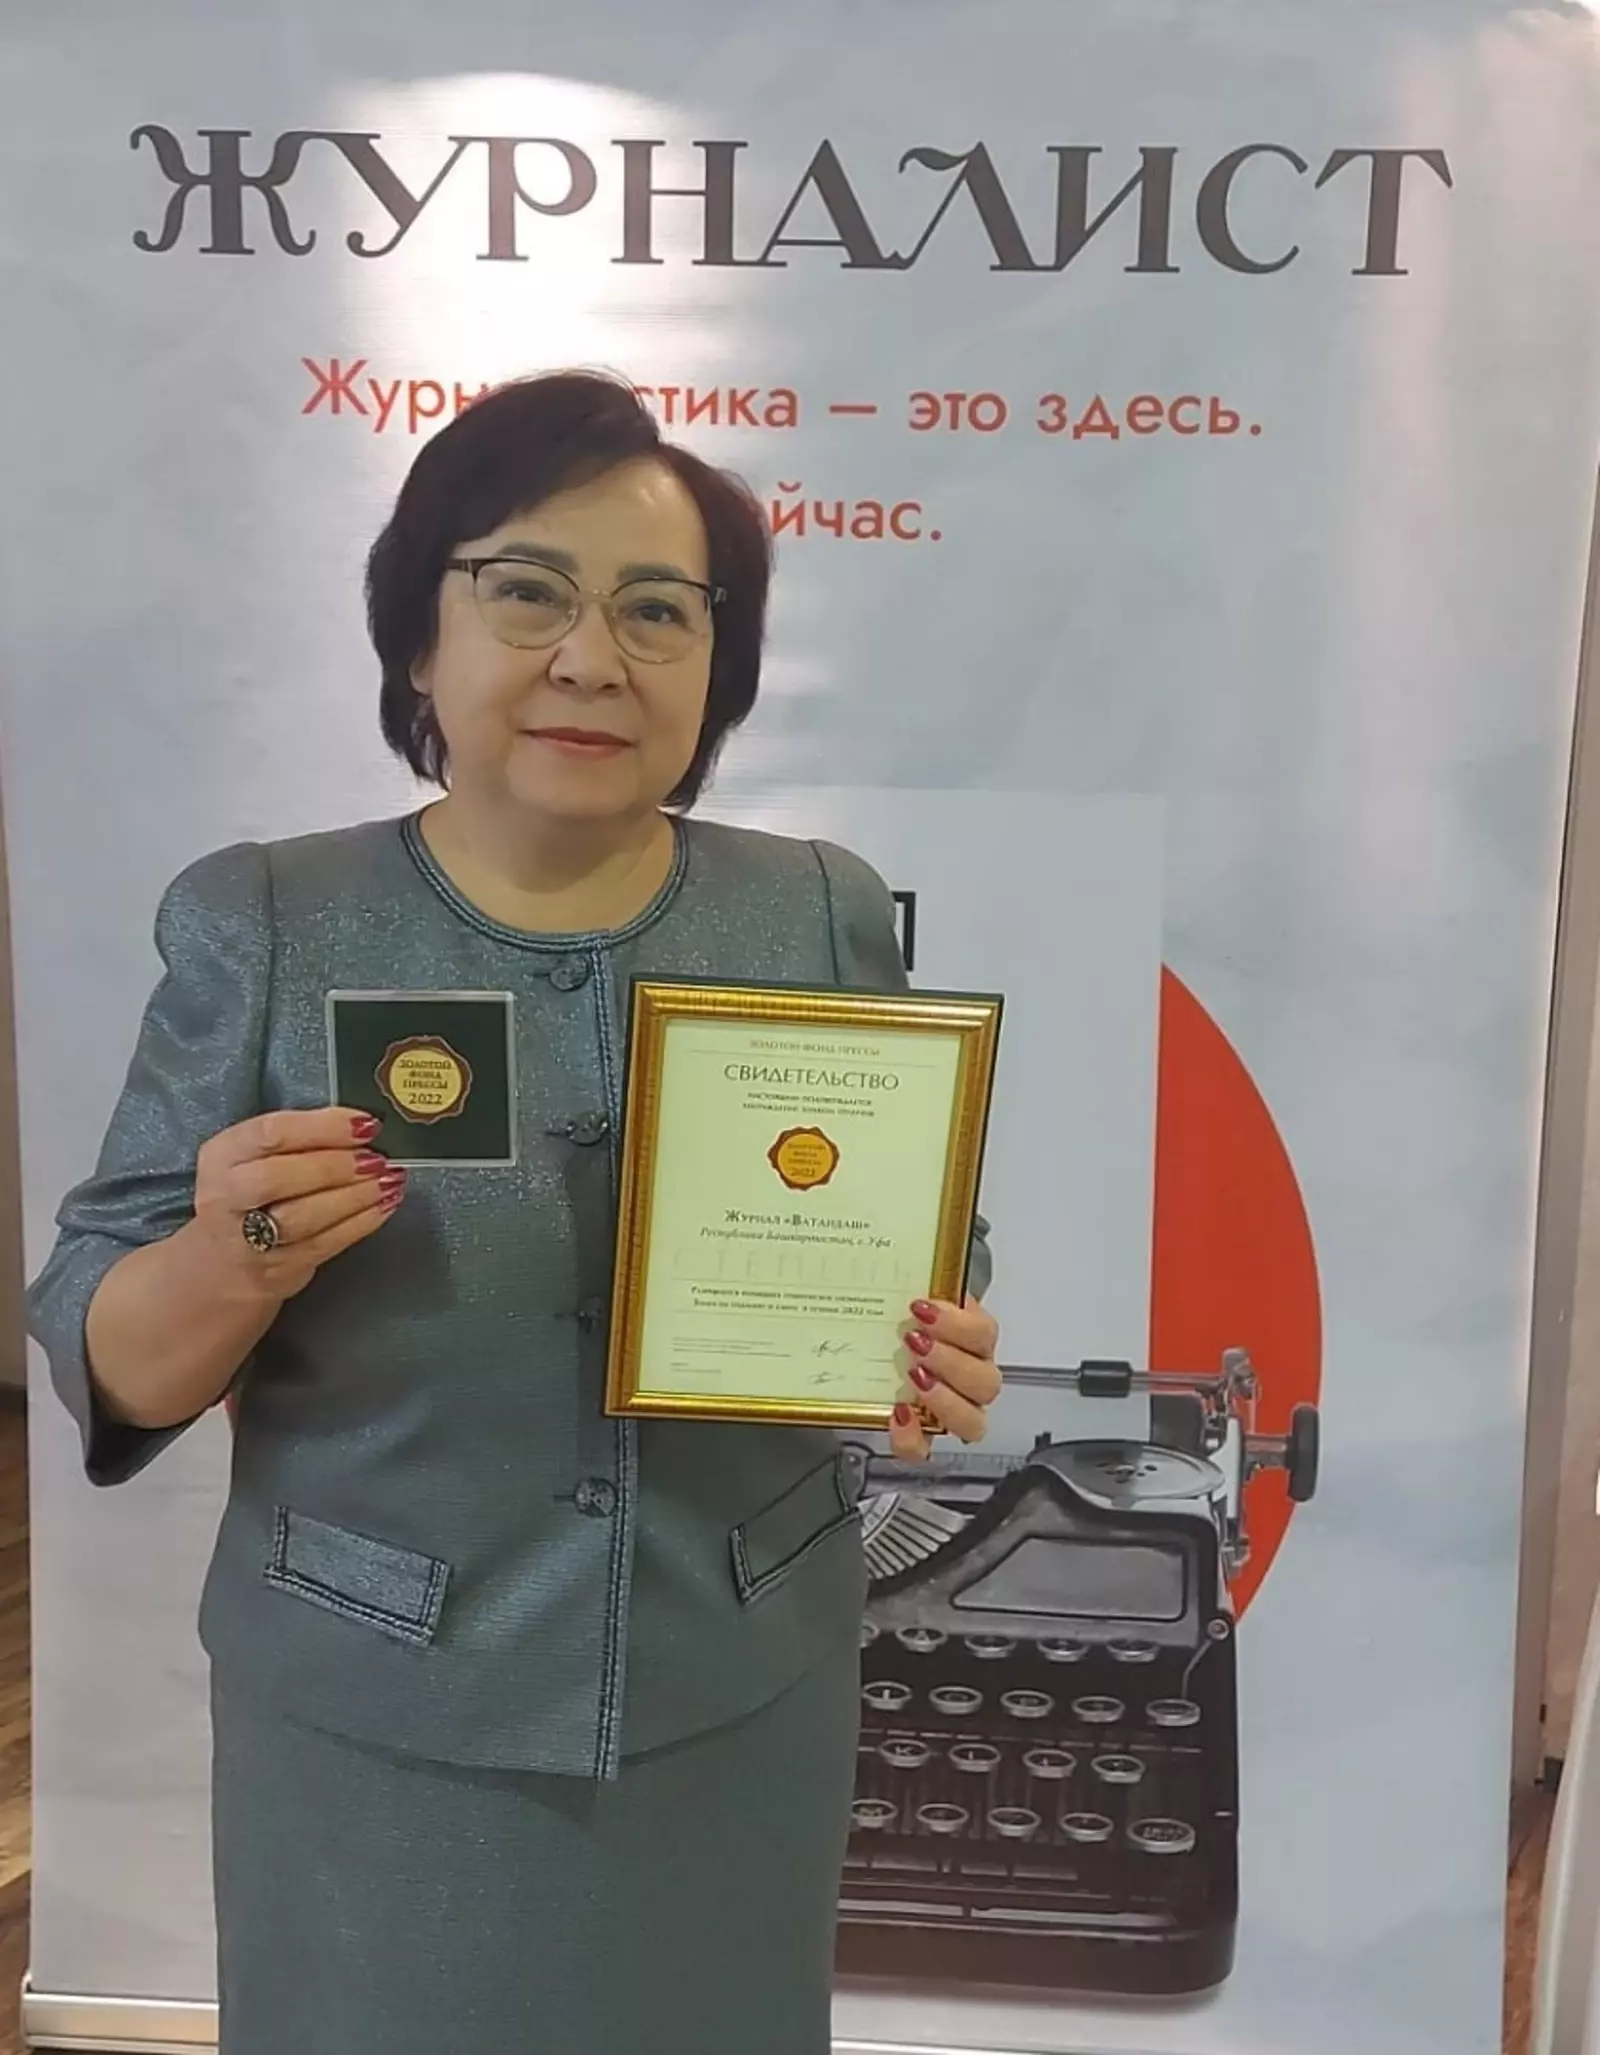 Журнал "Ватандаш" получил Знак отличия 1-й степени Золотого фонда прессы